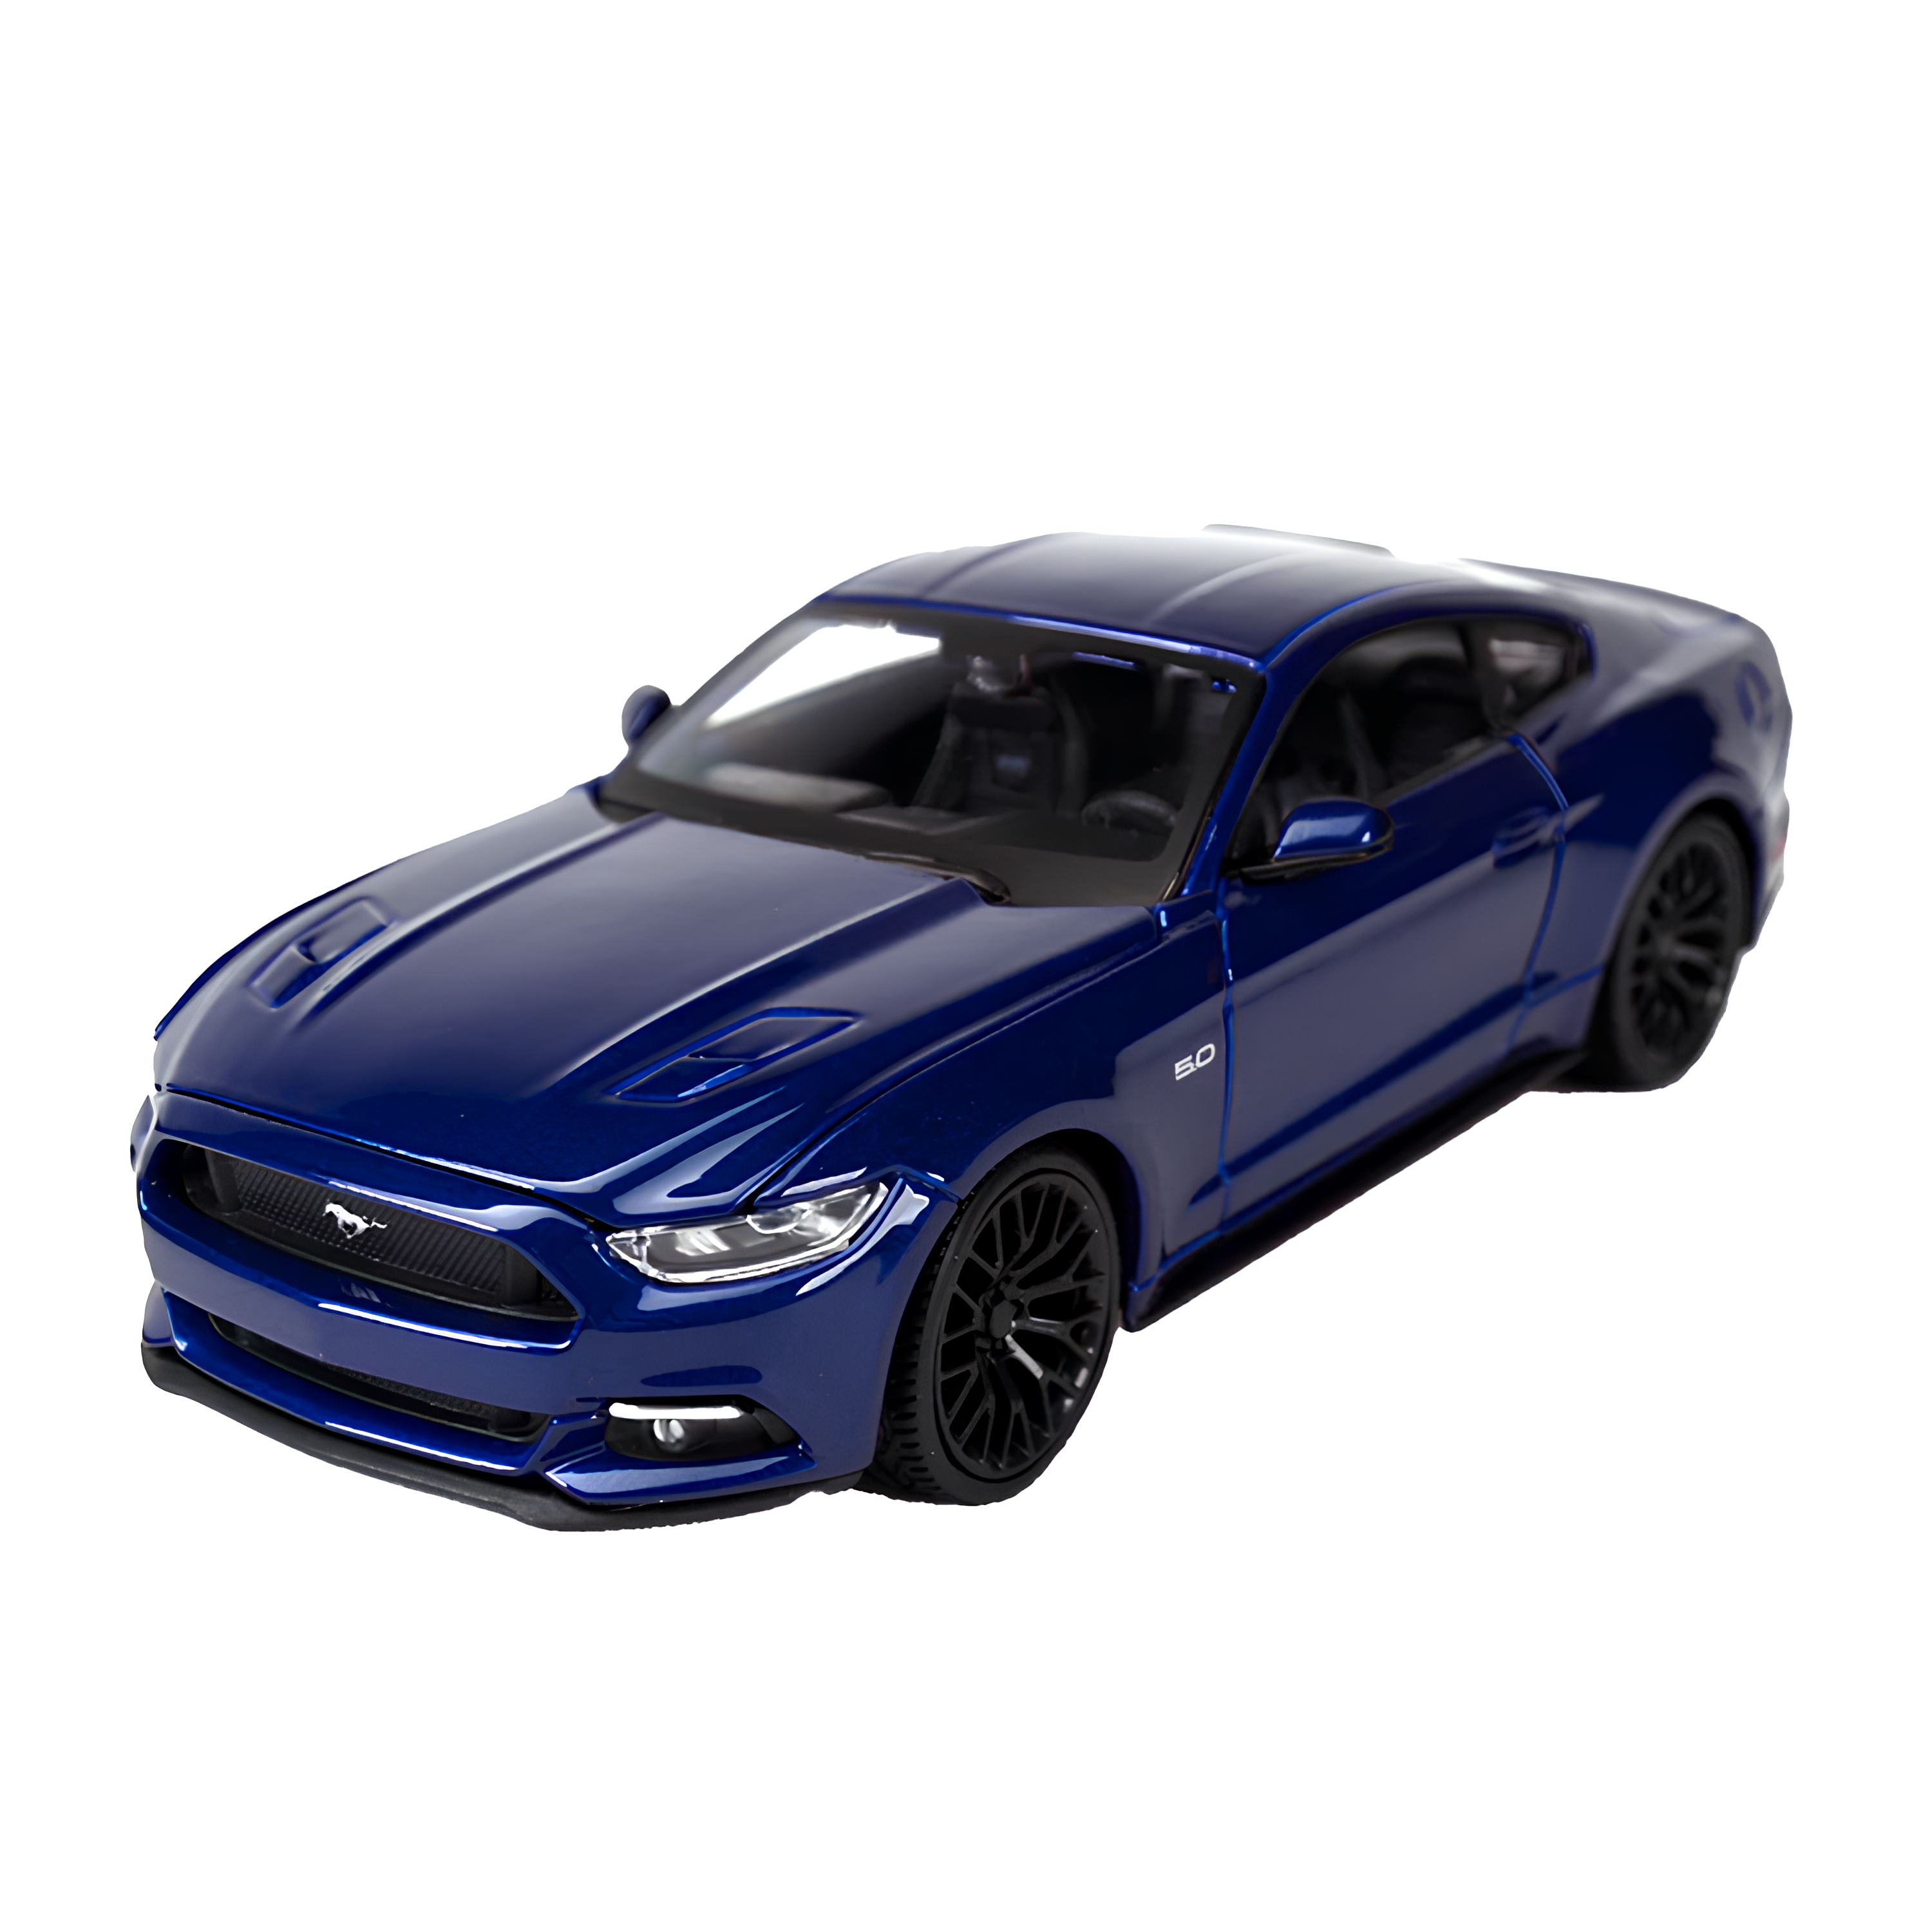 Miniatura Ford Mustang 2015 1:24 em Metal